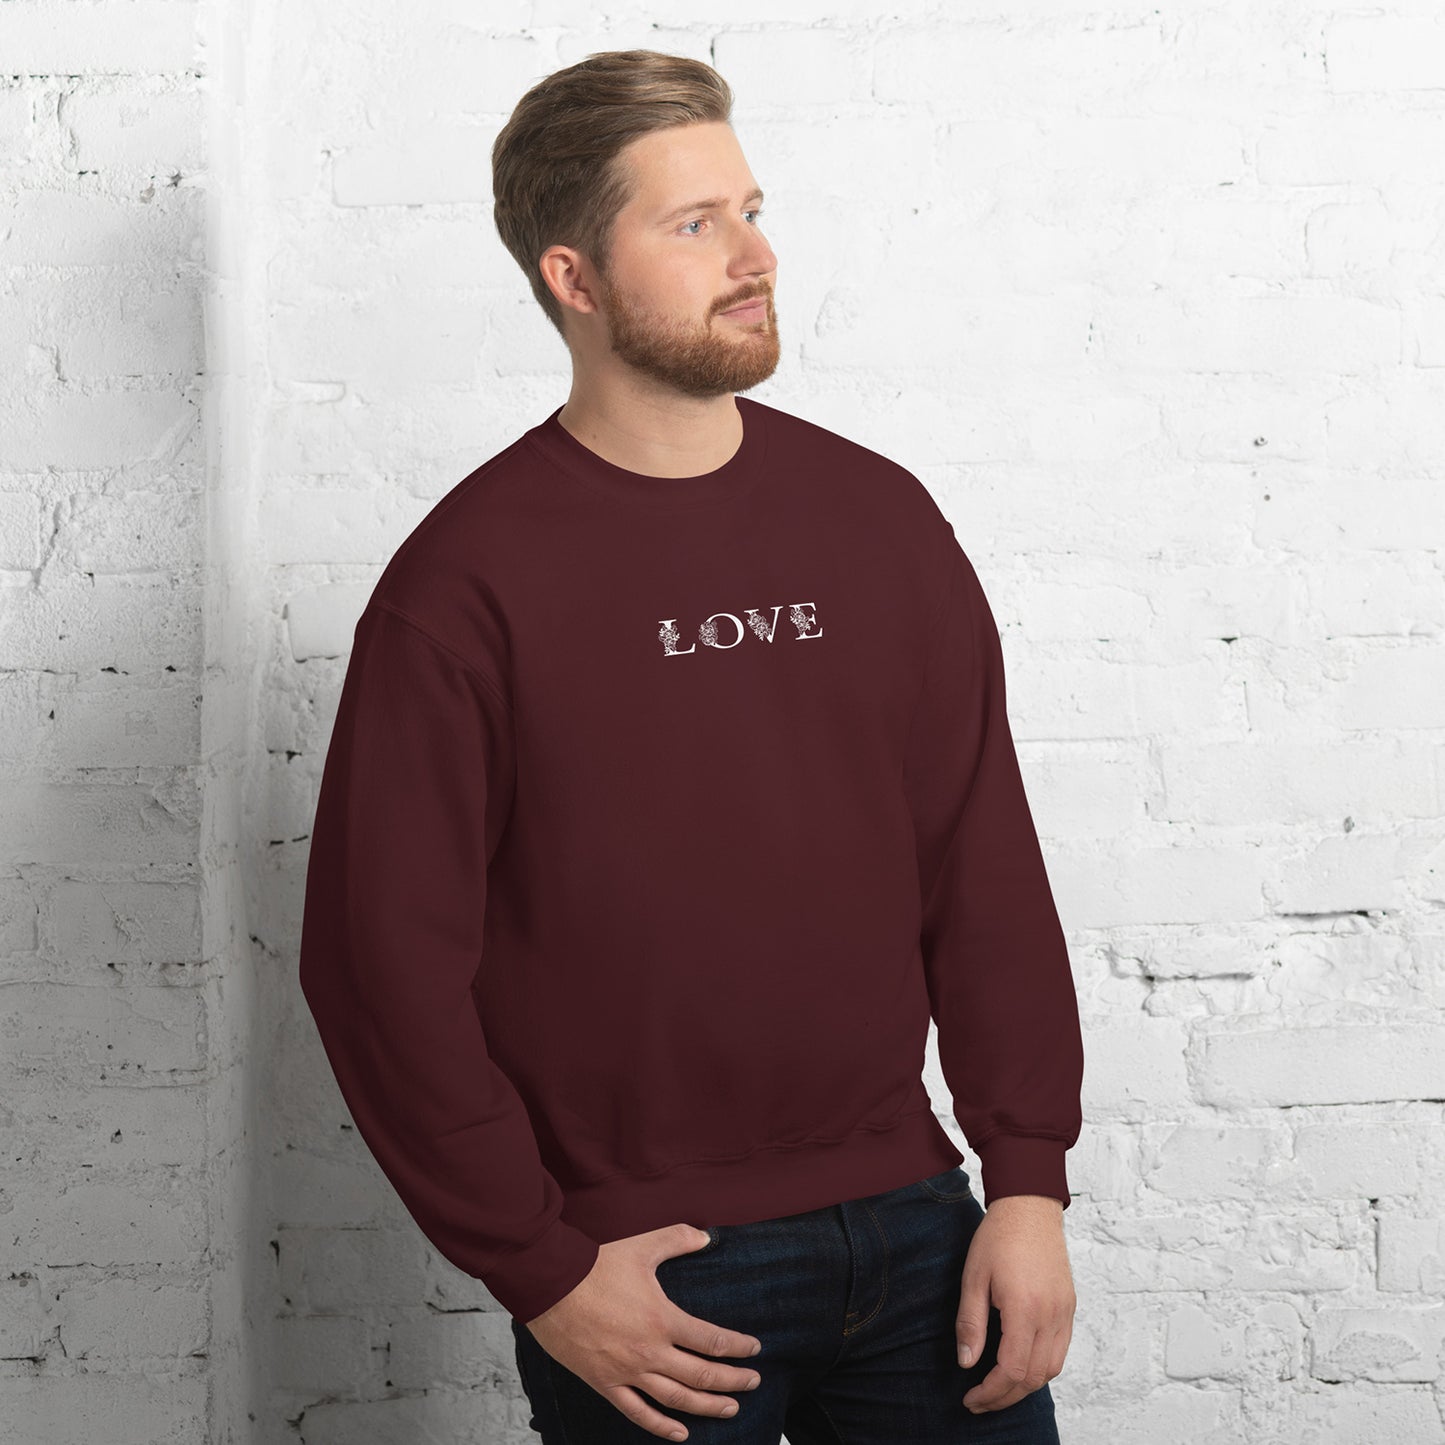 Love in Comfort Sweatshirt for men's